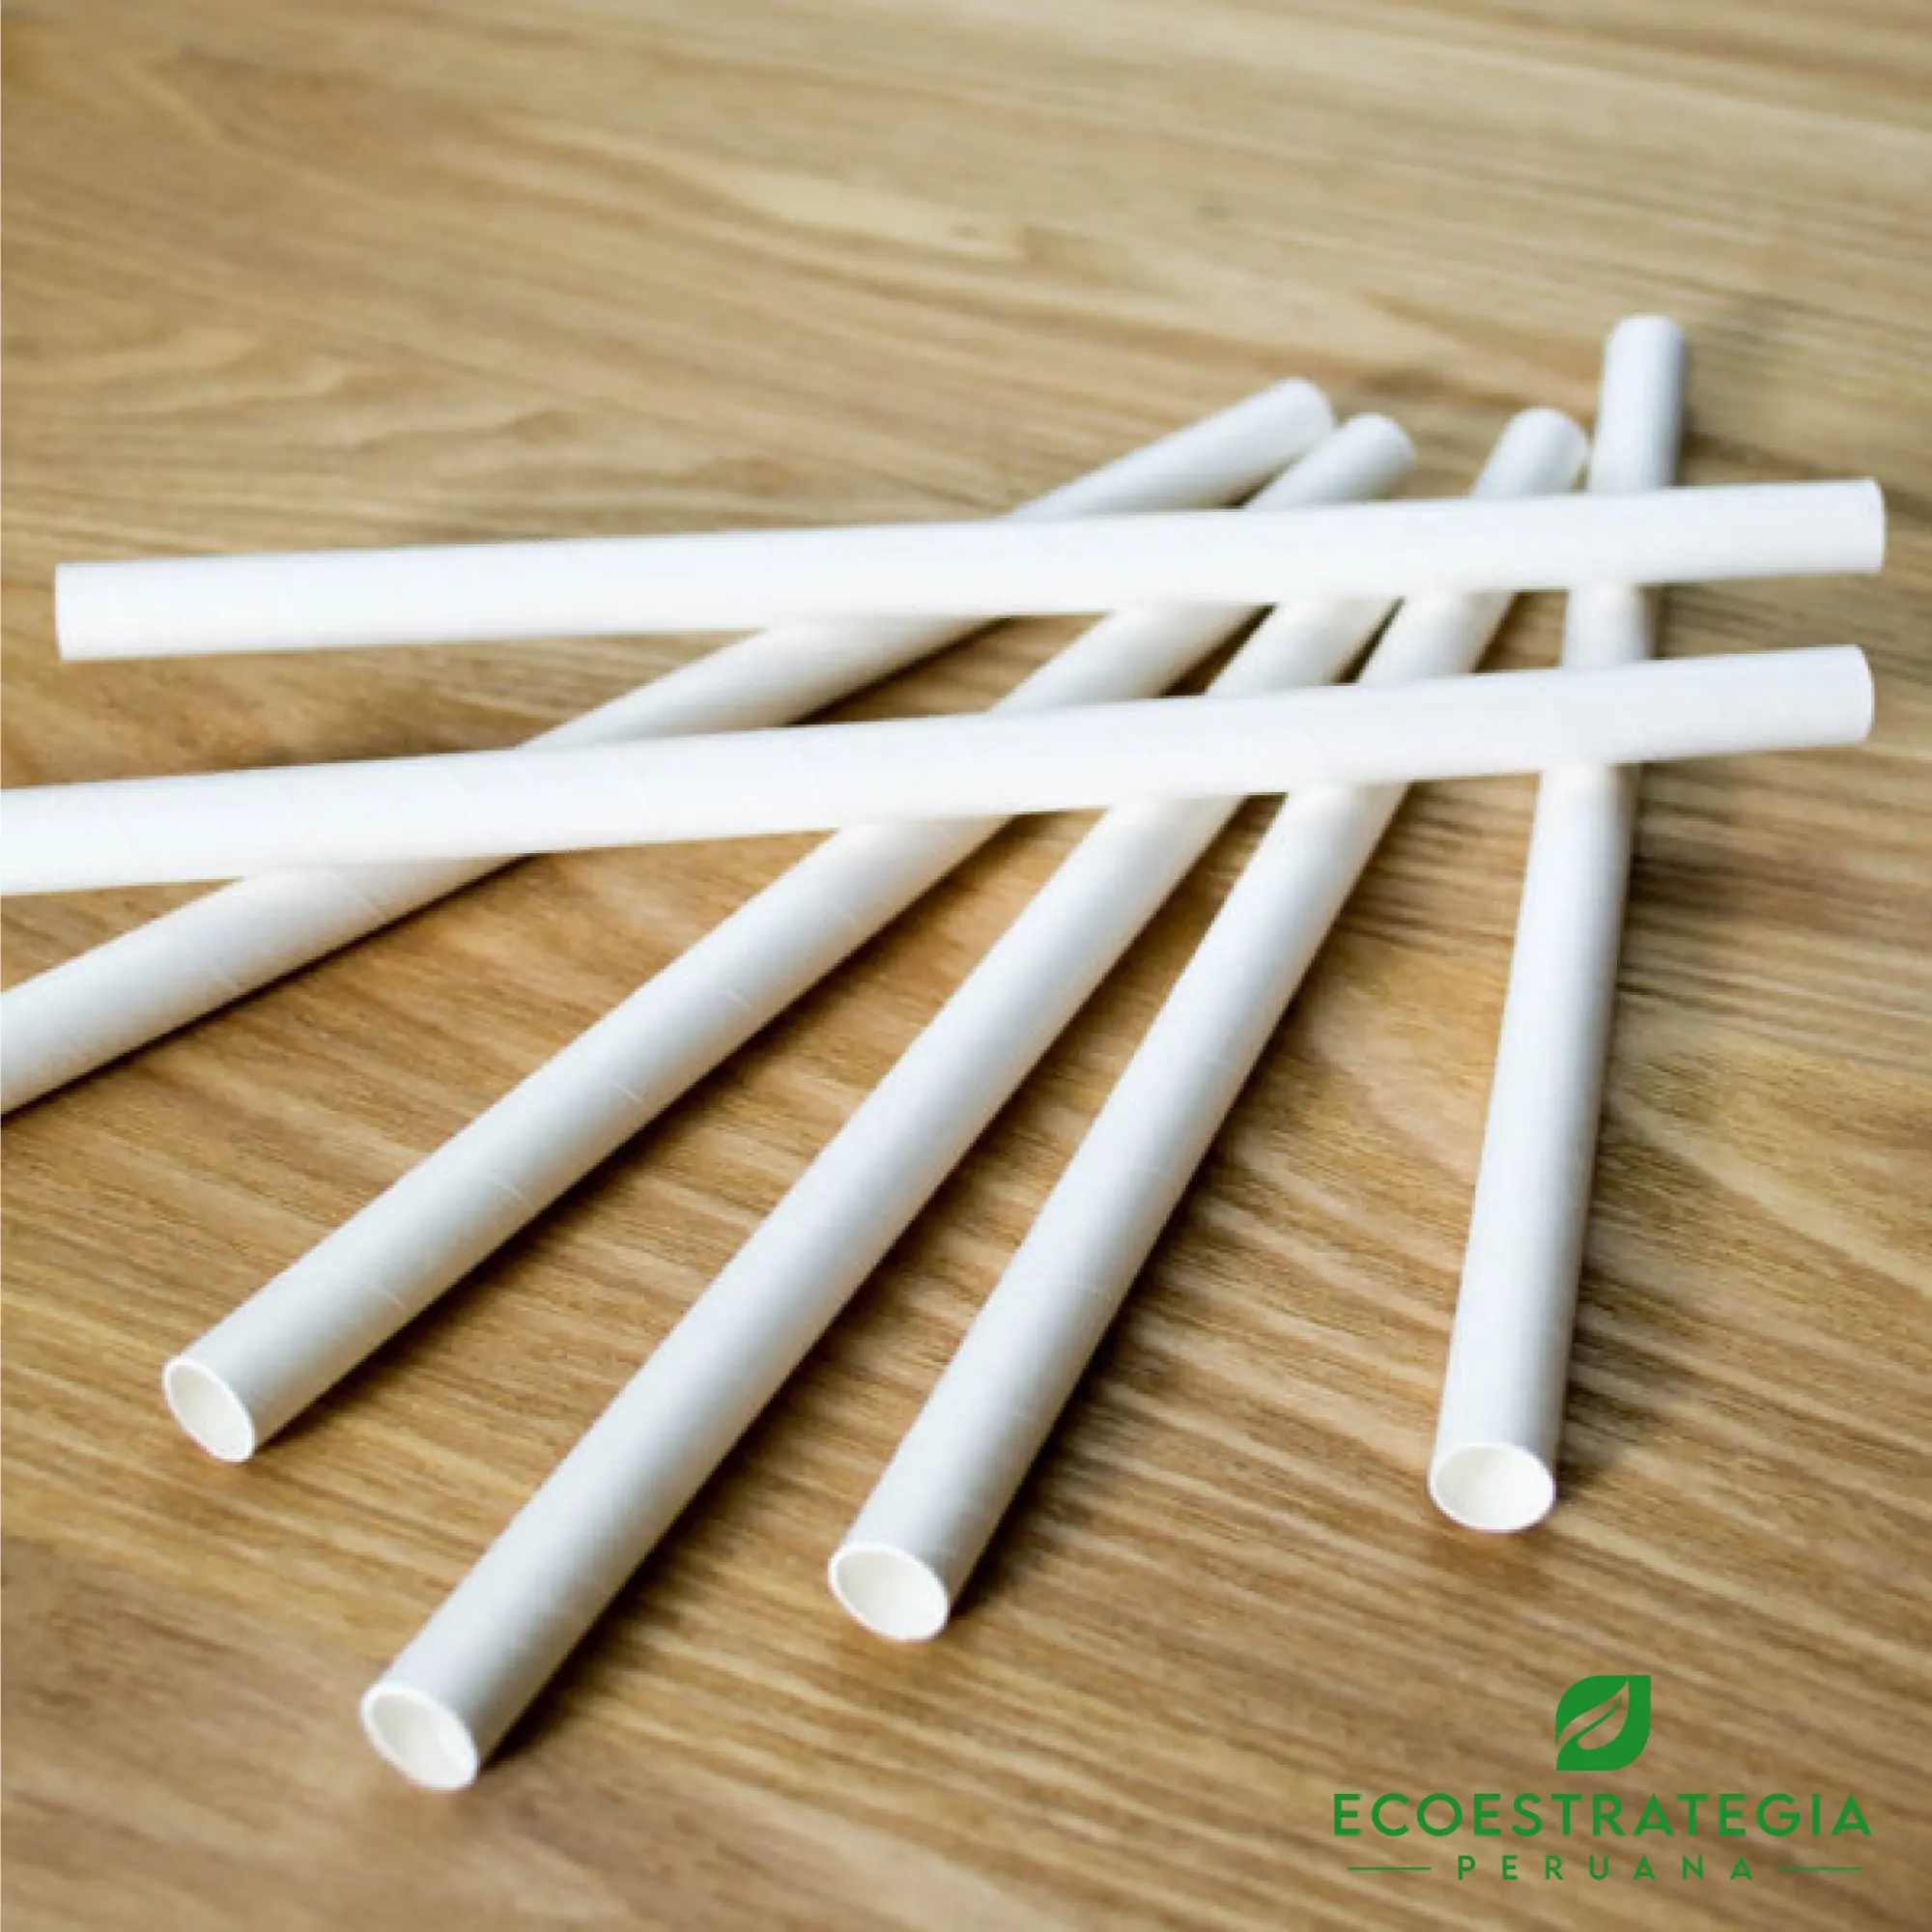 Este sorbete de 6 mm es un producto de materiales ecológicos, hecho a base de papel biodegradable. Cotiza sorbetes, cañitas y popotes para bebidas